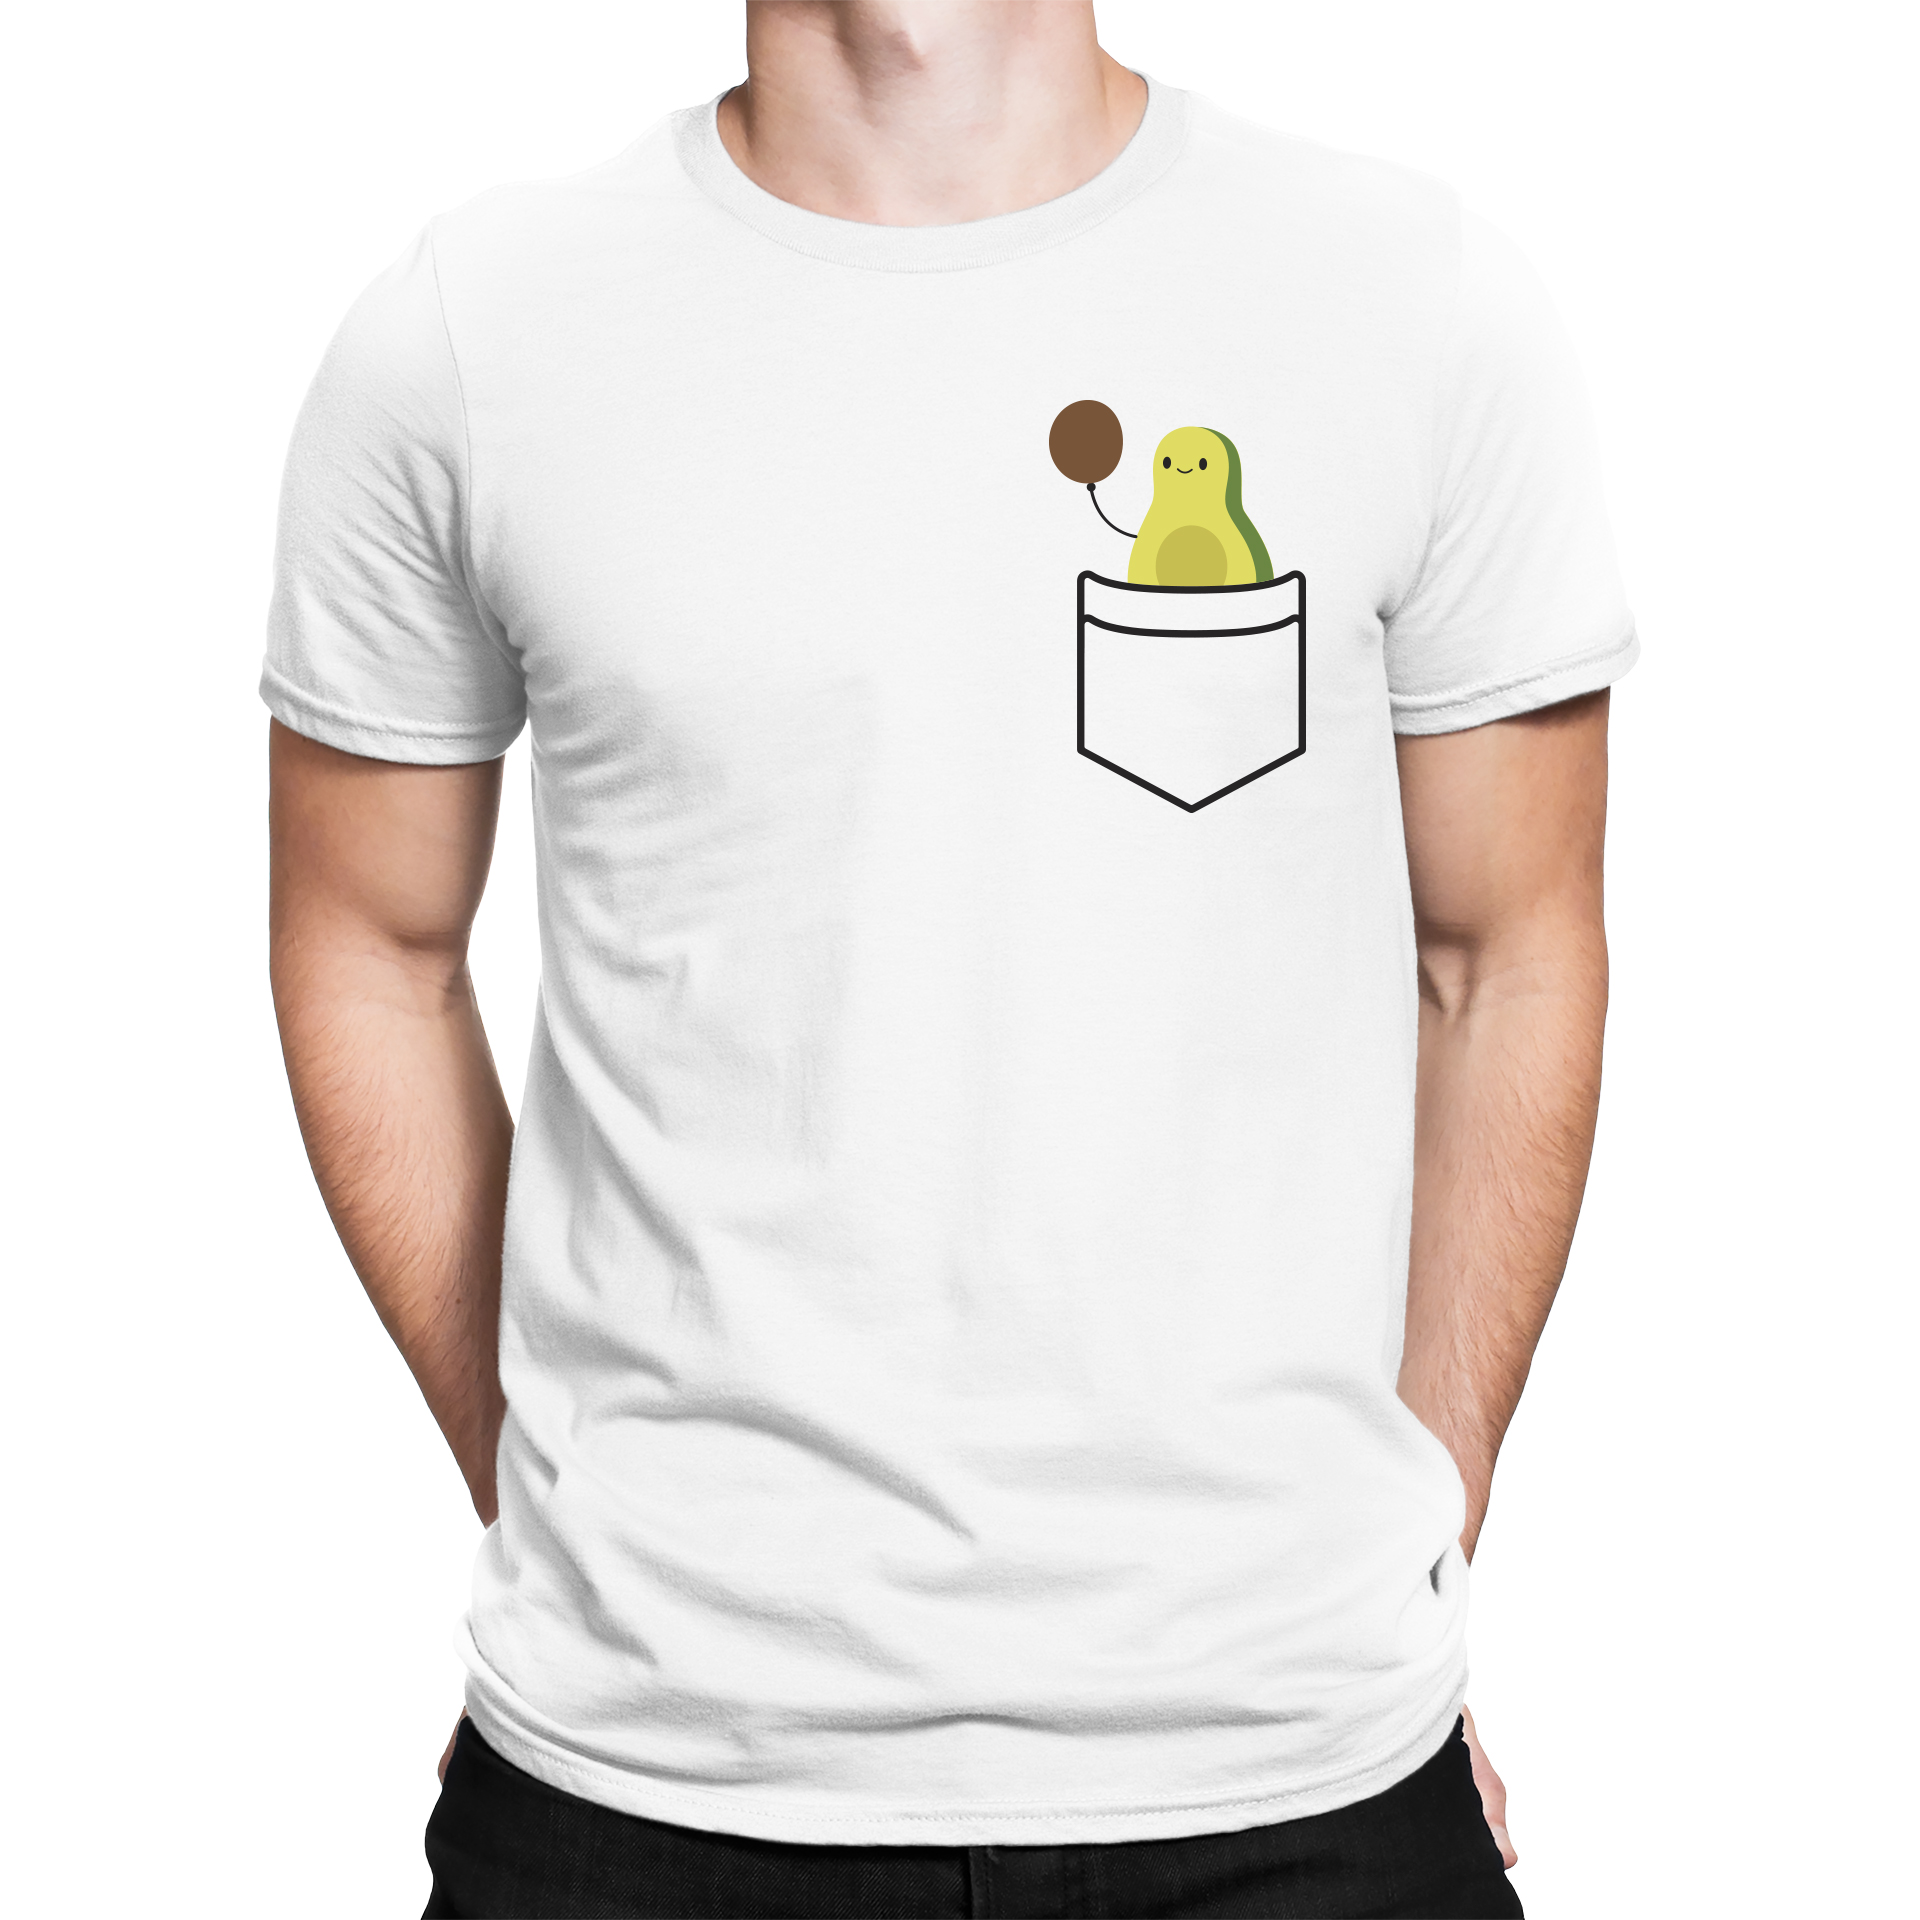 Camiseta Hombre Lila Claro – Azucar y Azuquita